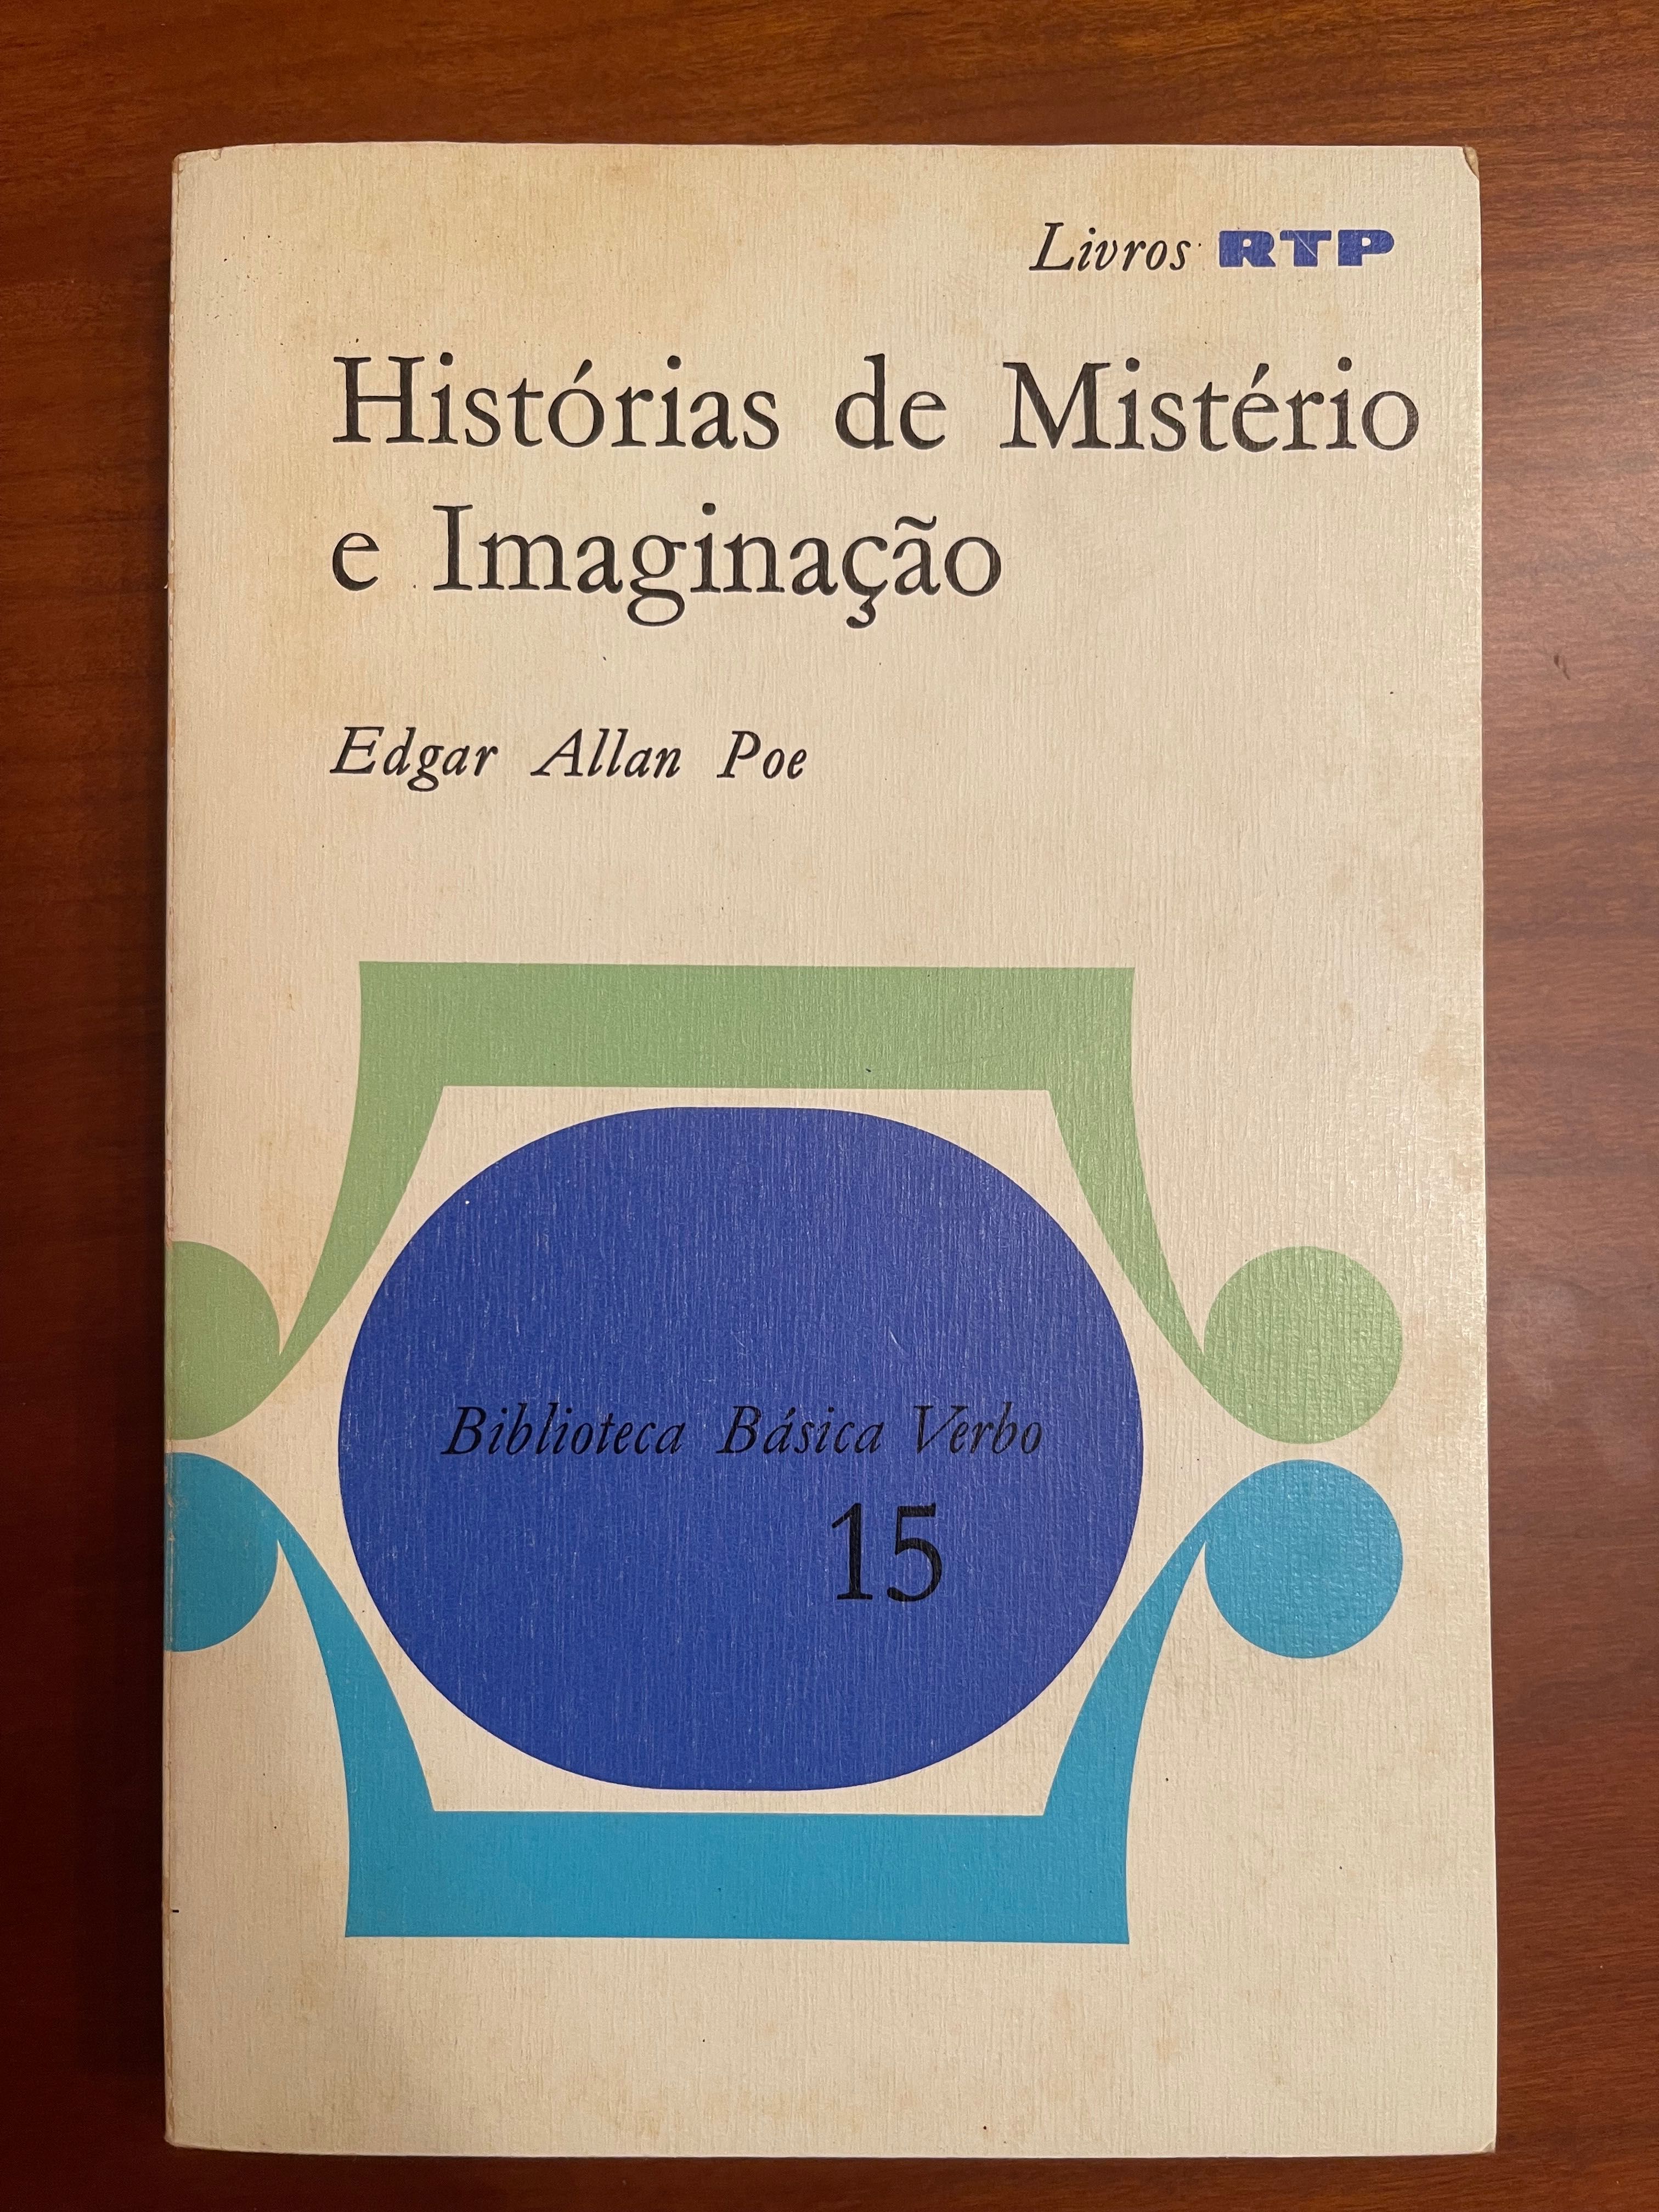 "Histórias de Mistério e Imaginação", de Edgar Allan Poe